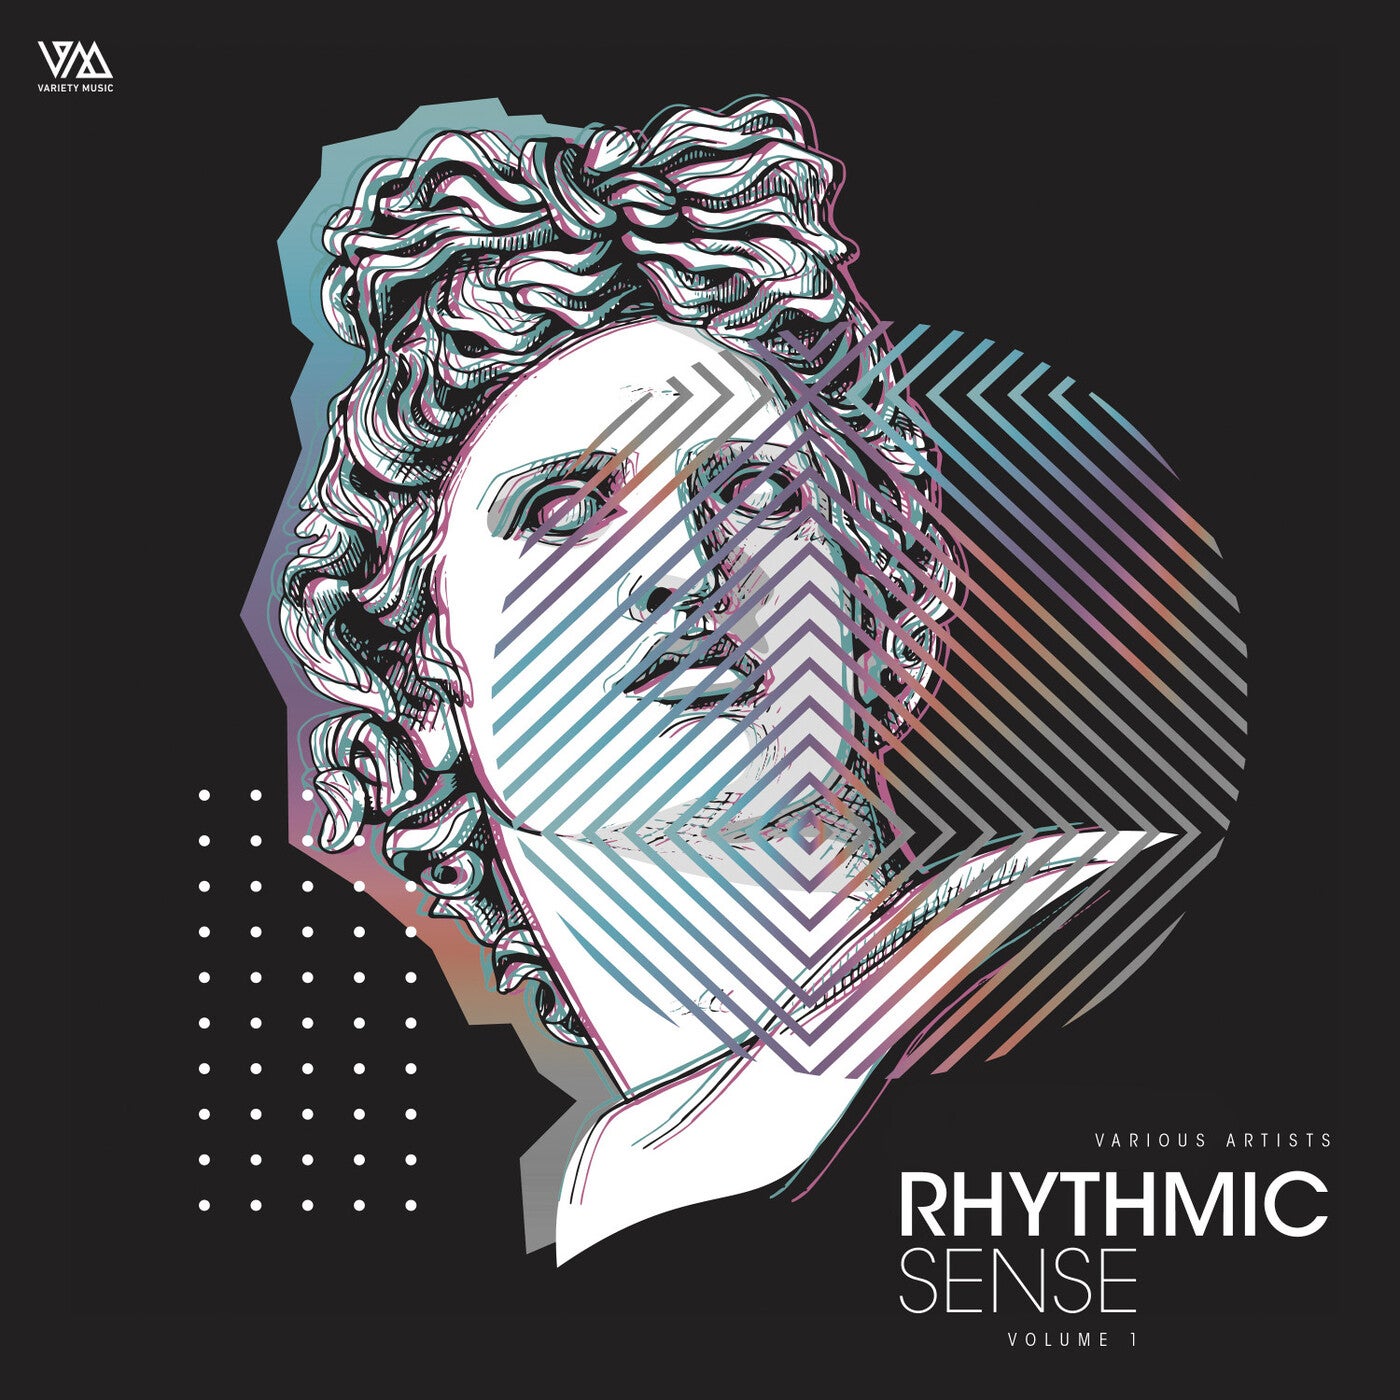 Rhythmic Sense Vol. 1